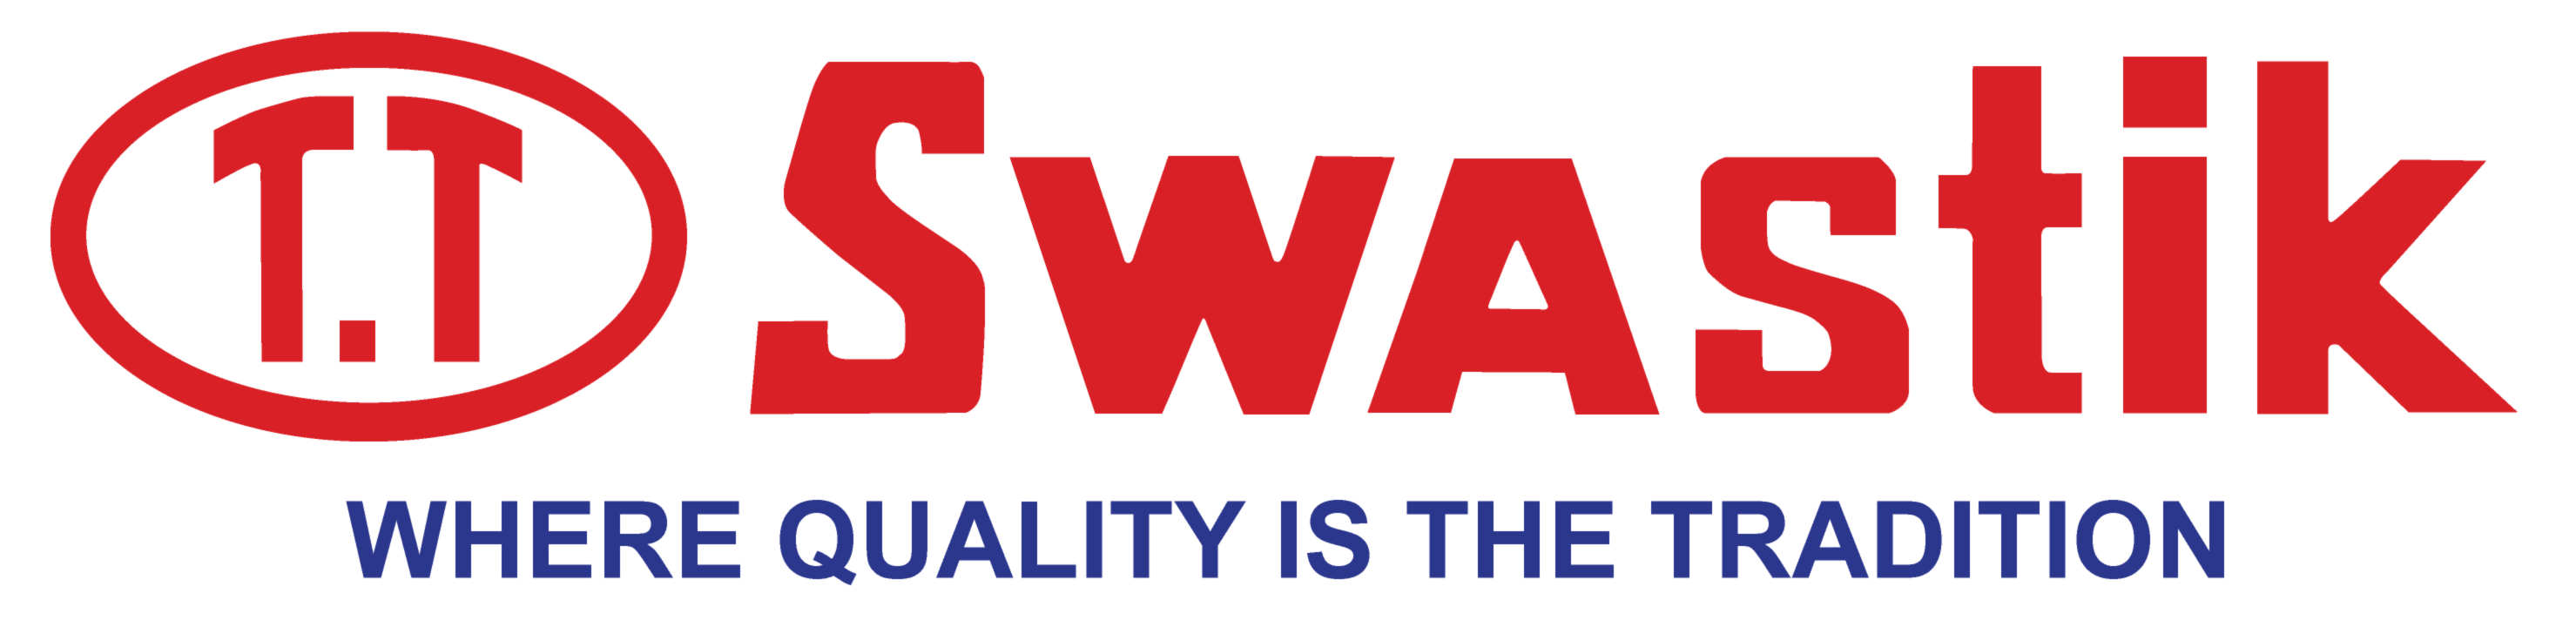 Swastik Pipe Limited Logo